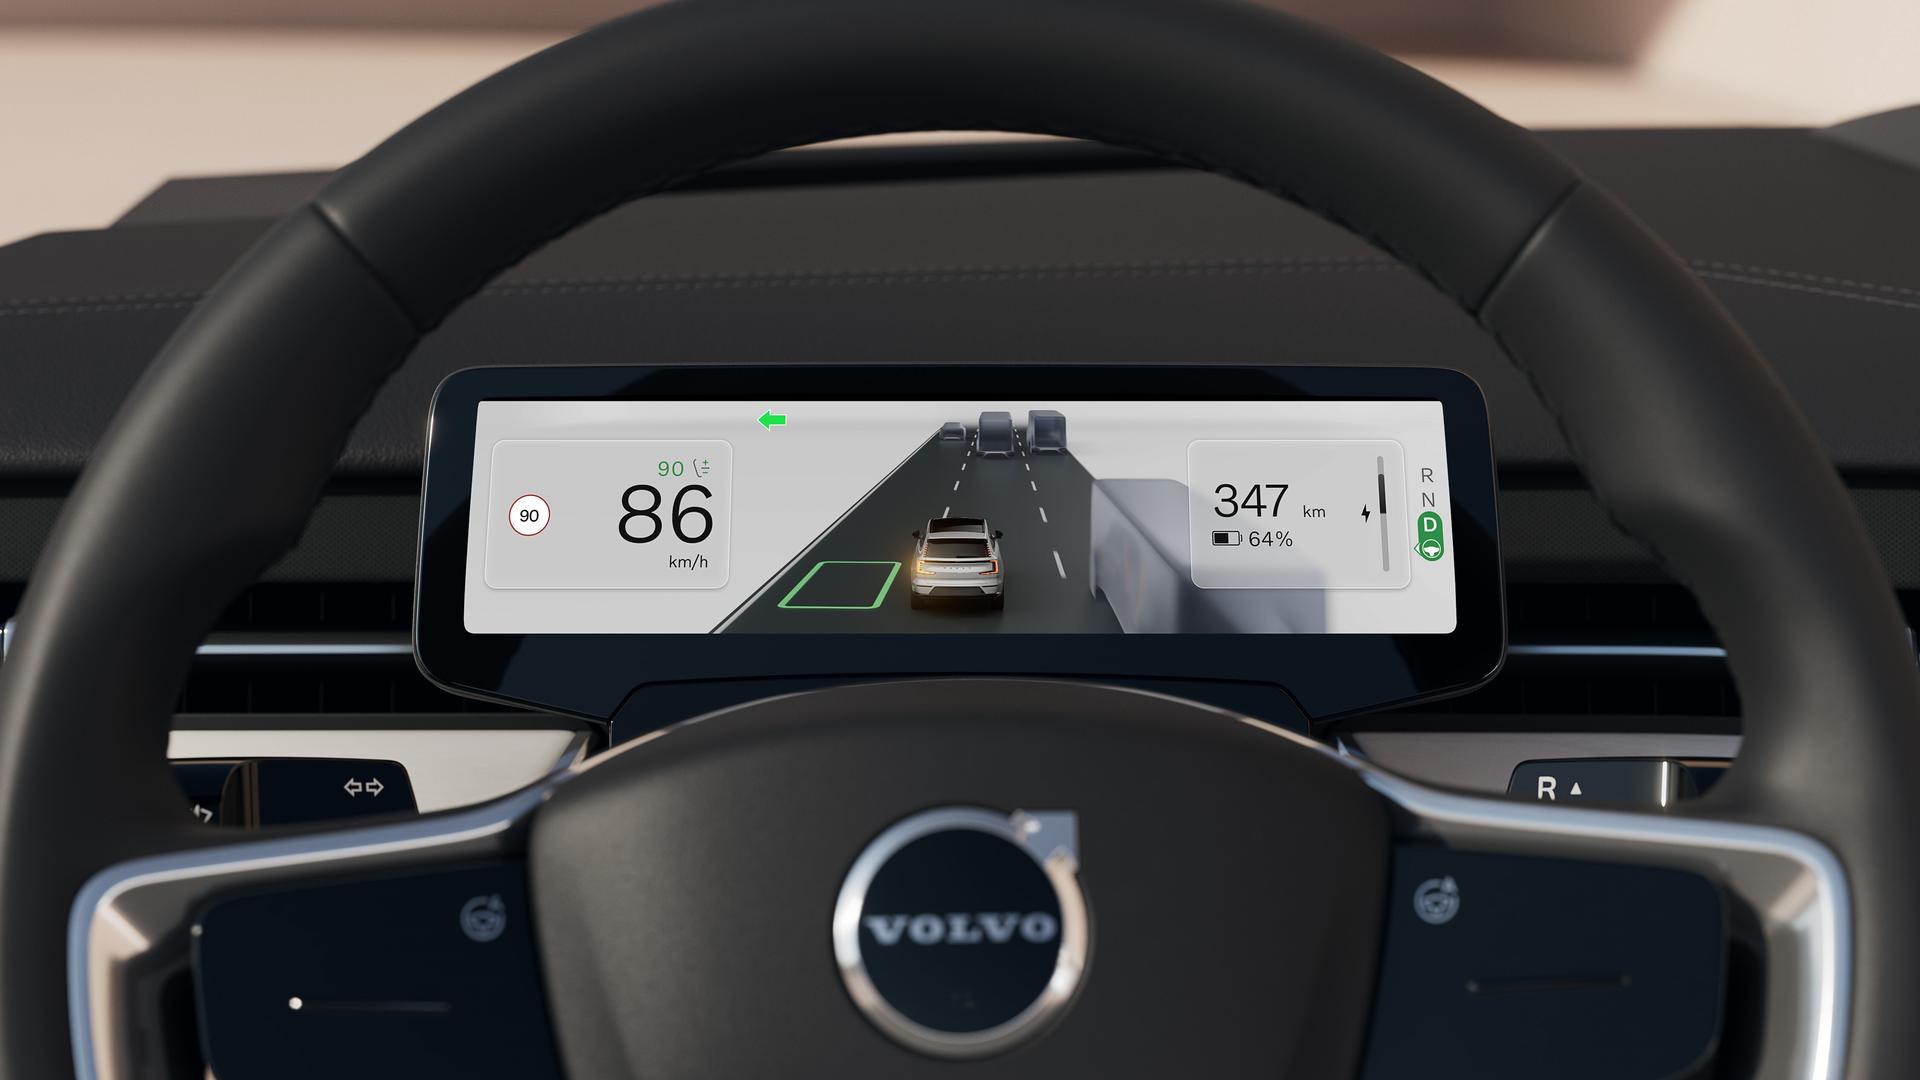 Ein Beispiel für sprachgesteuerte intelligente Systeme in modernen Fahrzeugen: Volvos EX90 erfasst, wohin der Fahrer schaut und wie oft und wie lange seine Augen geschlossen sind. Außerdem gibt es ein Innenraumradar.